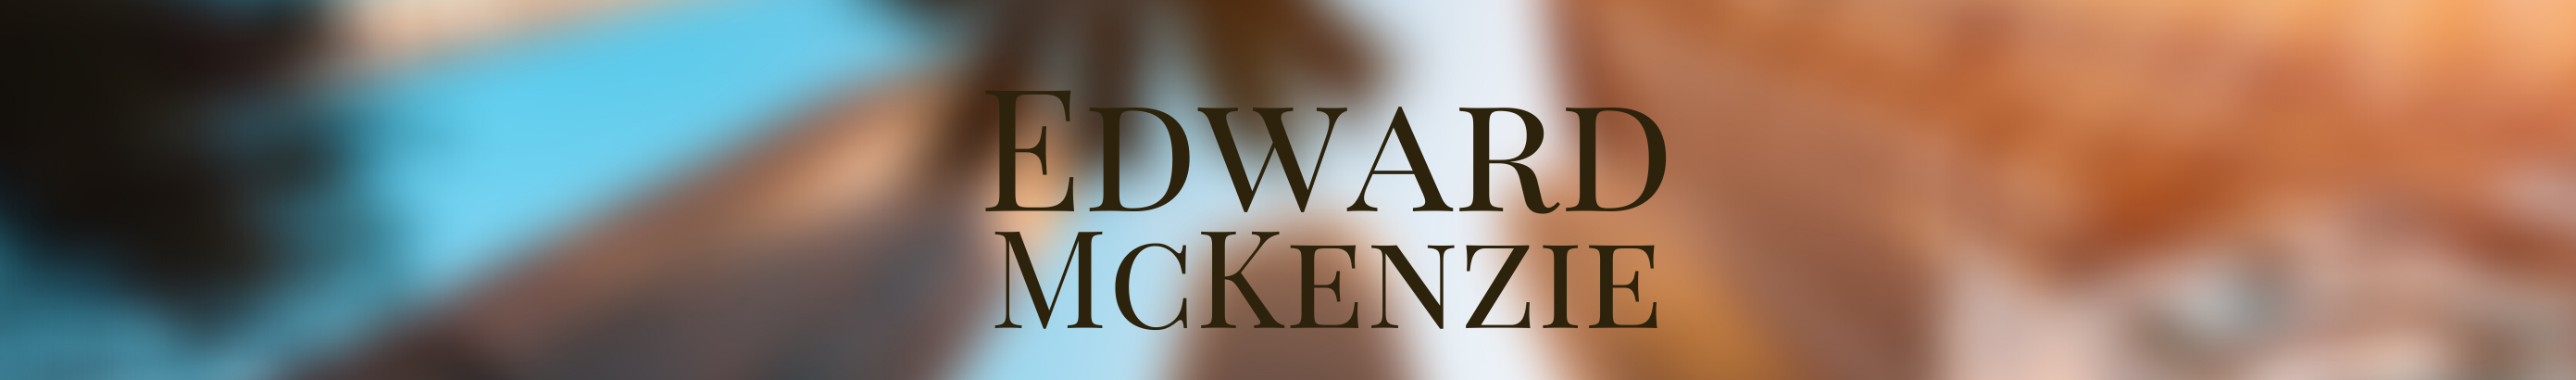 Edward P. McKenzie's profile banner